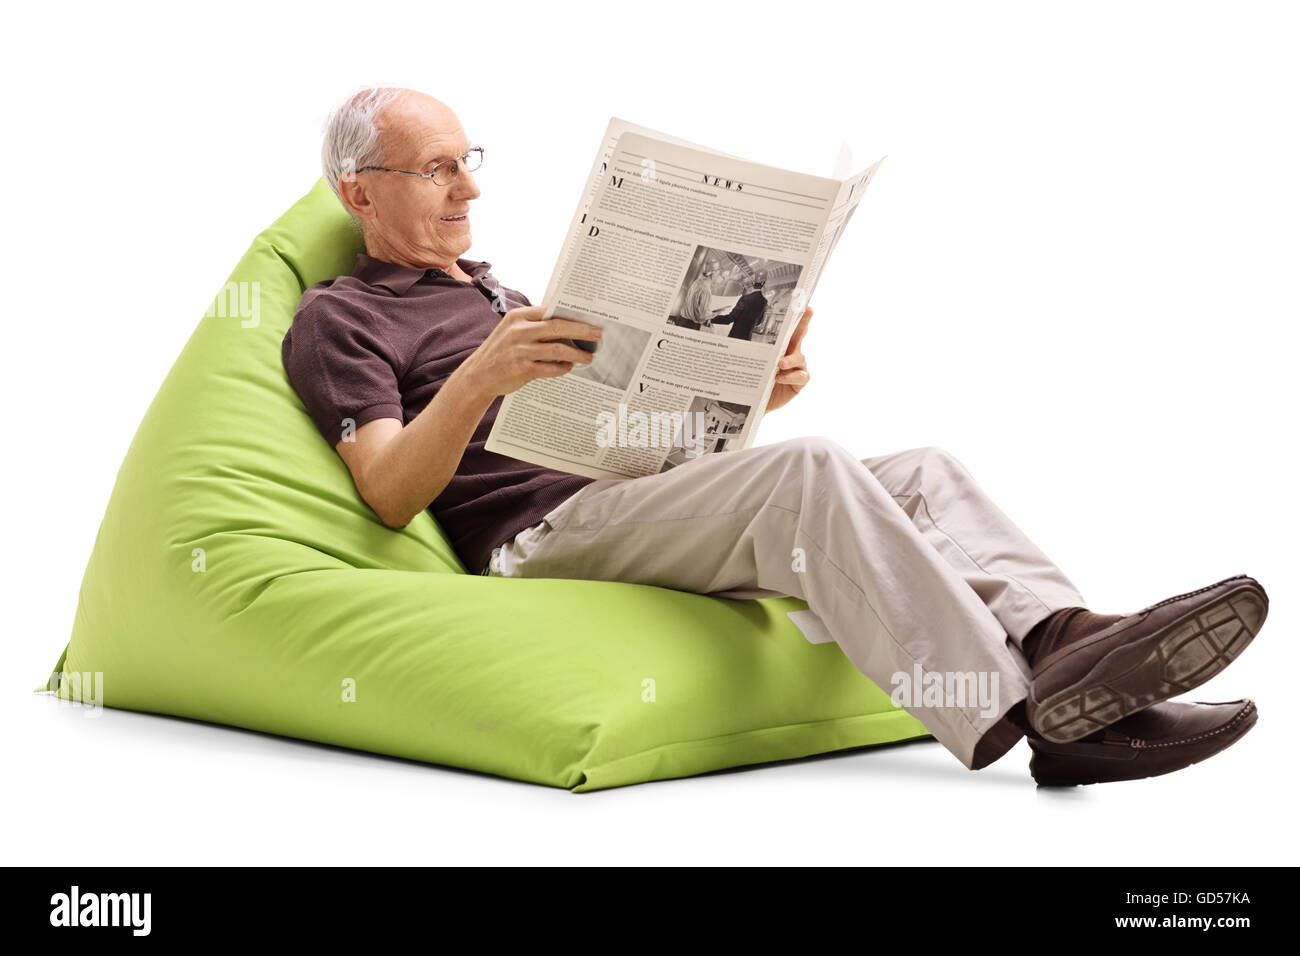 Freudige Senior Lesen einer Zeitung setzte auf eine angenehm grüne Sitzsack isoliert auf weißem Hintergrund Stockfoto